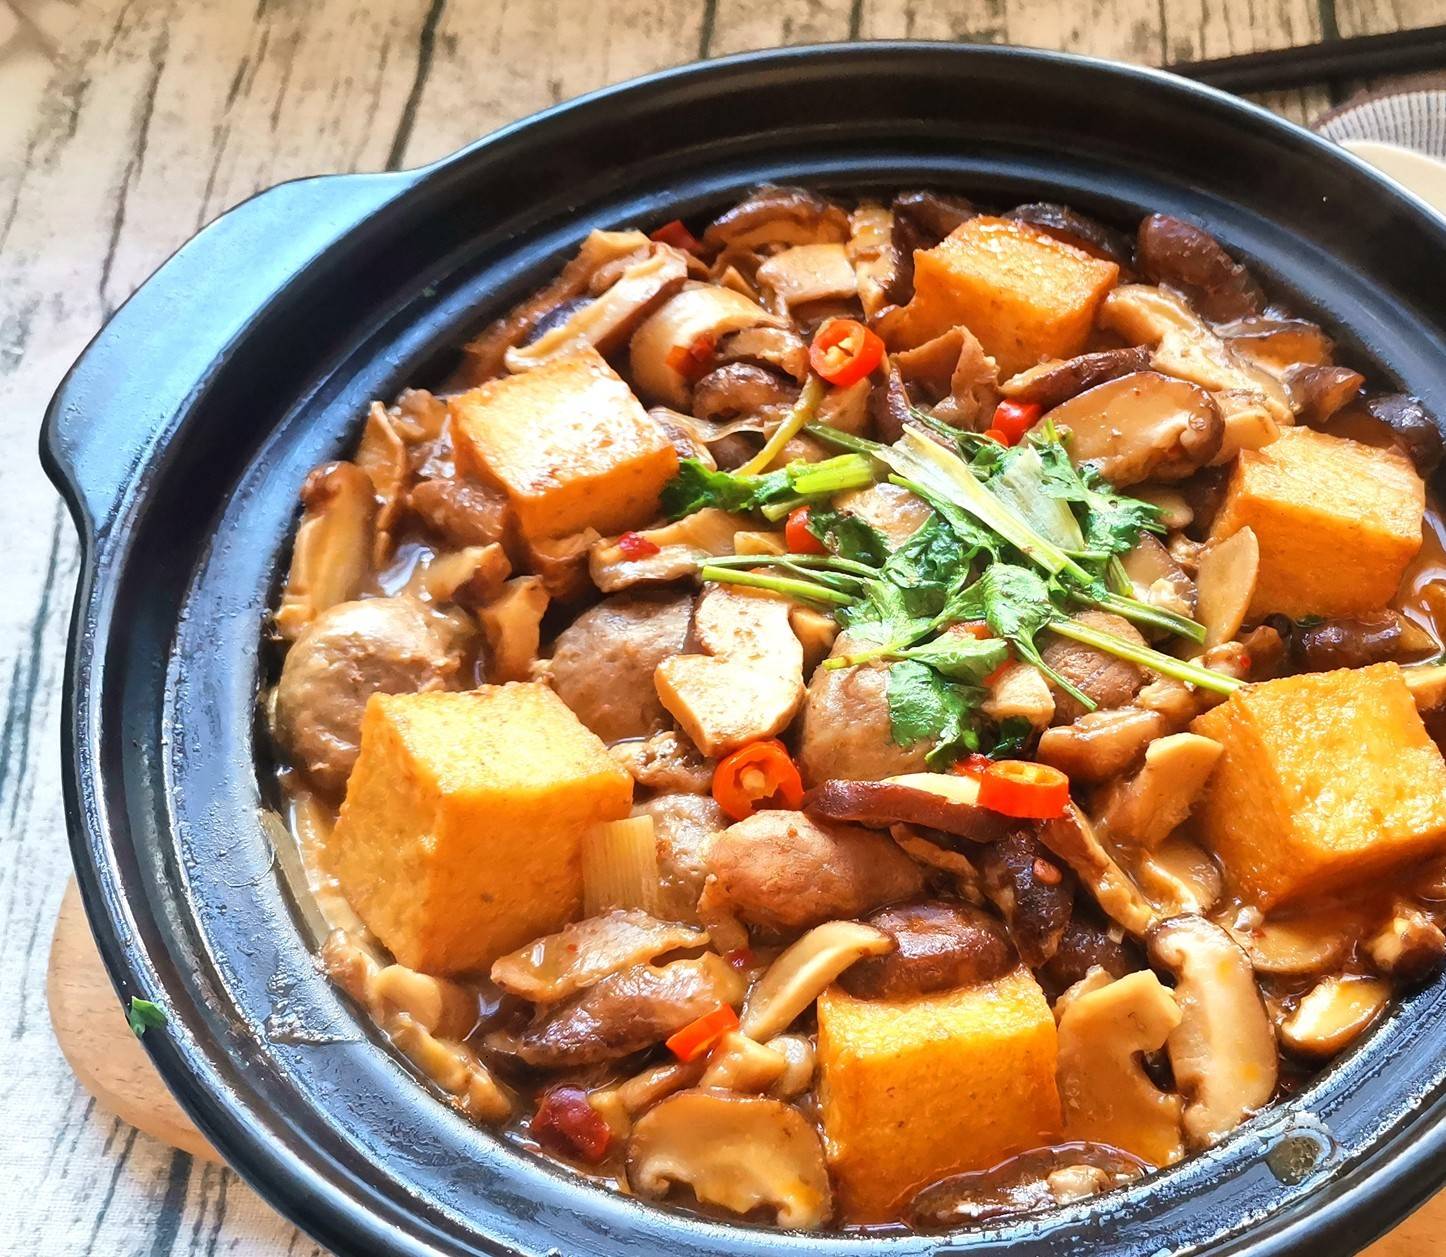 牛肉丸和鱼豆腐香脆可口这是一道简单快捷的家常砂锅菜 